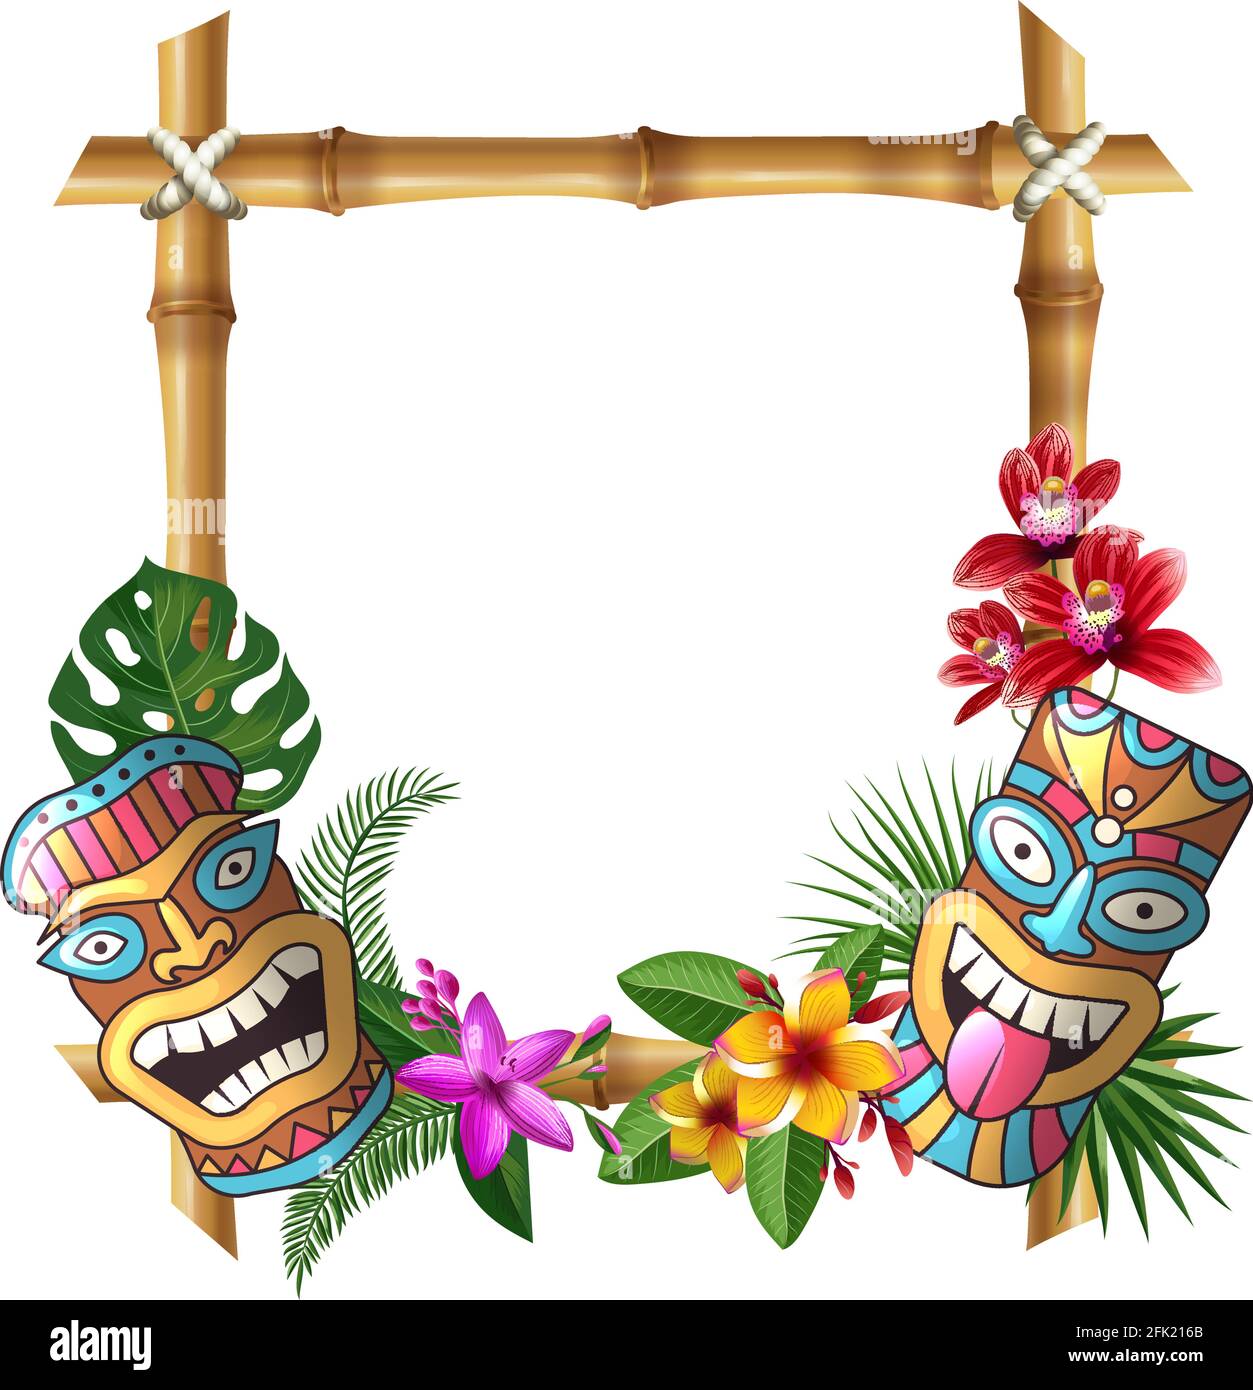 Tiki Maske und Rahmen. Hawaii authentischer Hintergrund Bambus quadratische Sticks exotische Blumen und Pflanzen hölzerne Totem Vektor kulturelles Objekt Stock Vektor